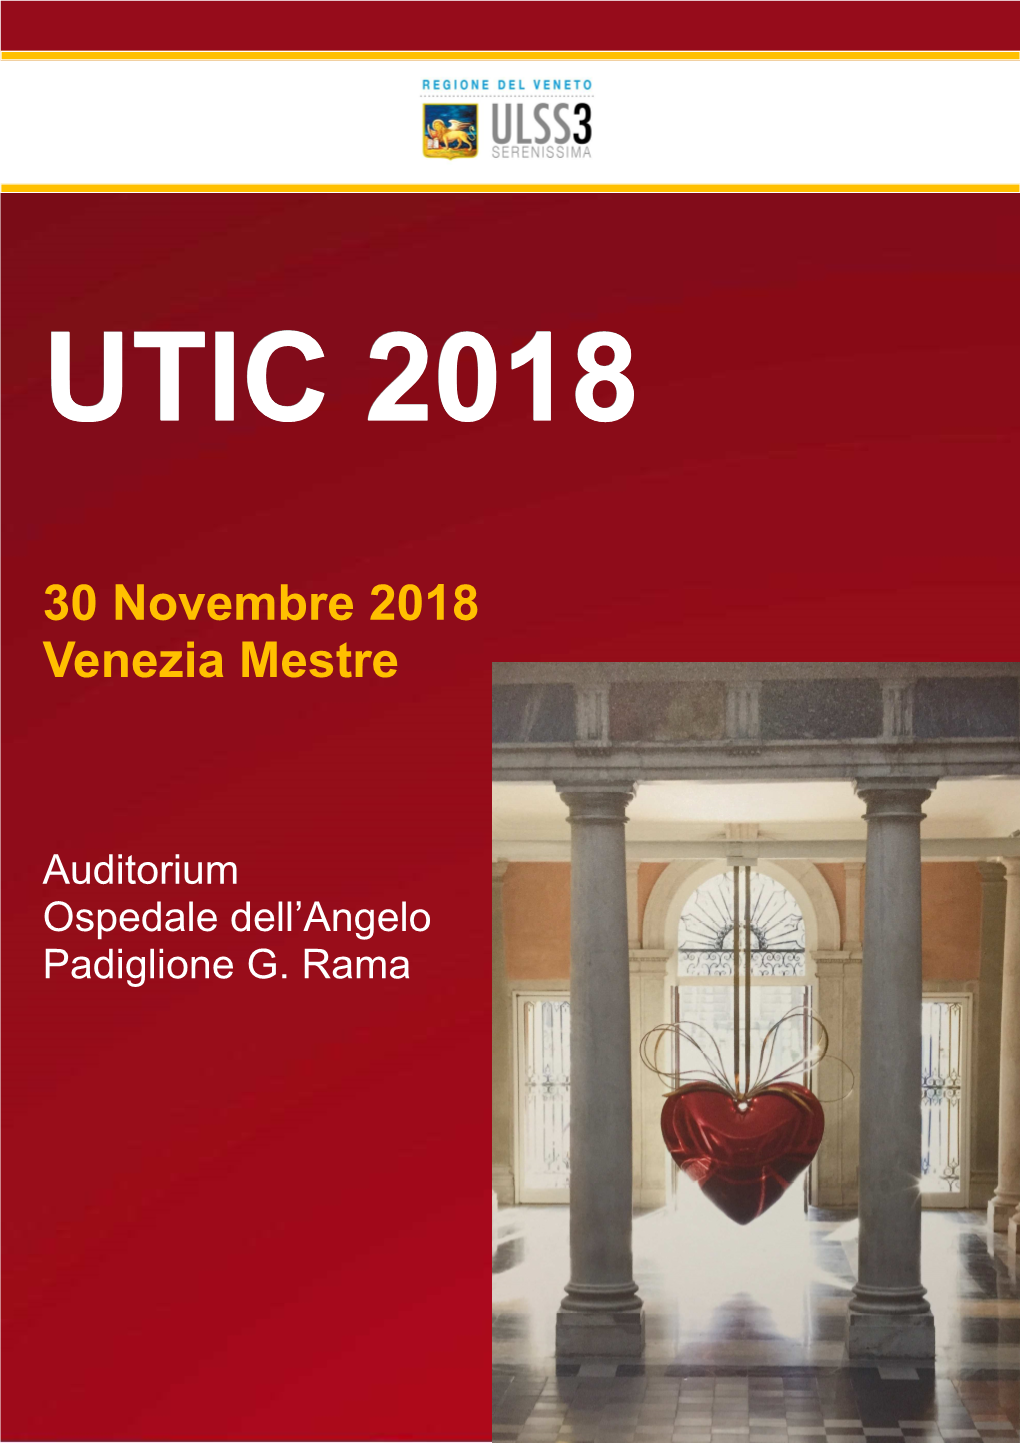 30 Novembre 2018 Venezia Mestre